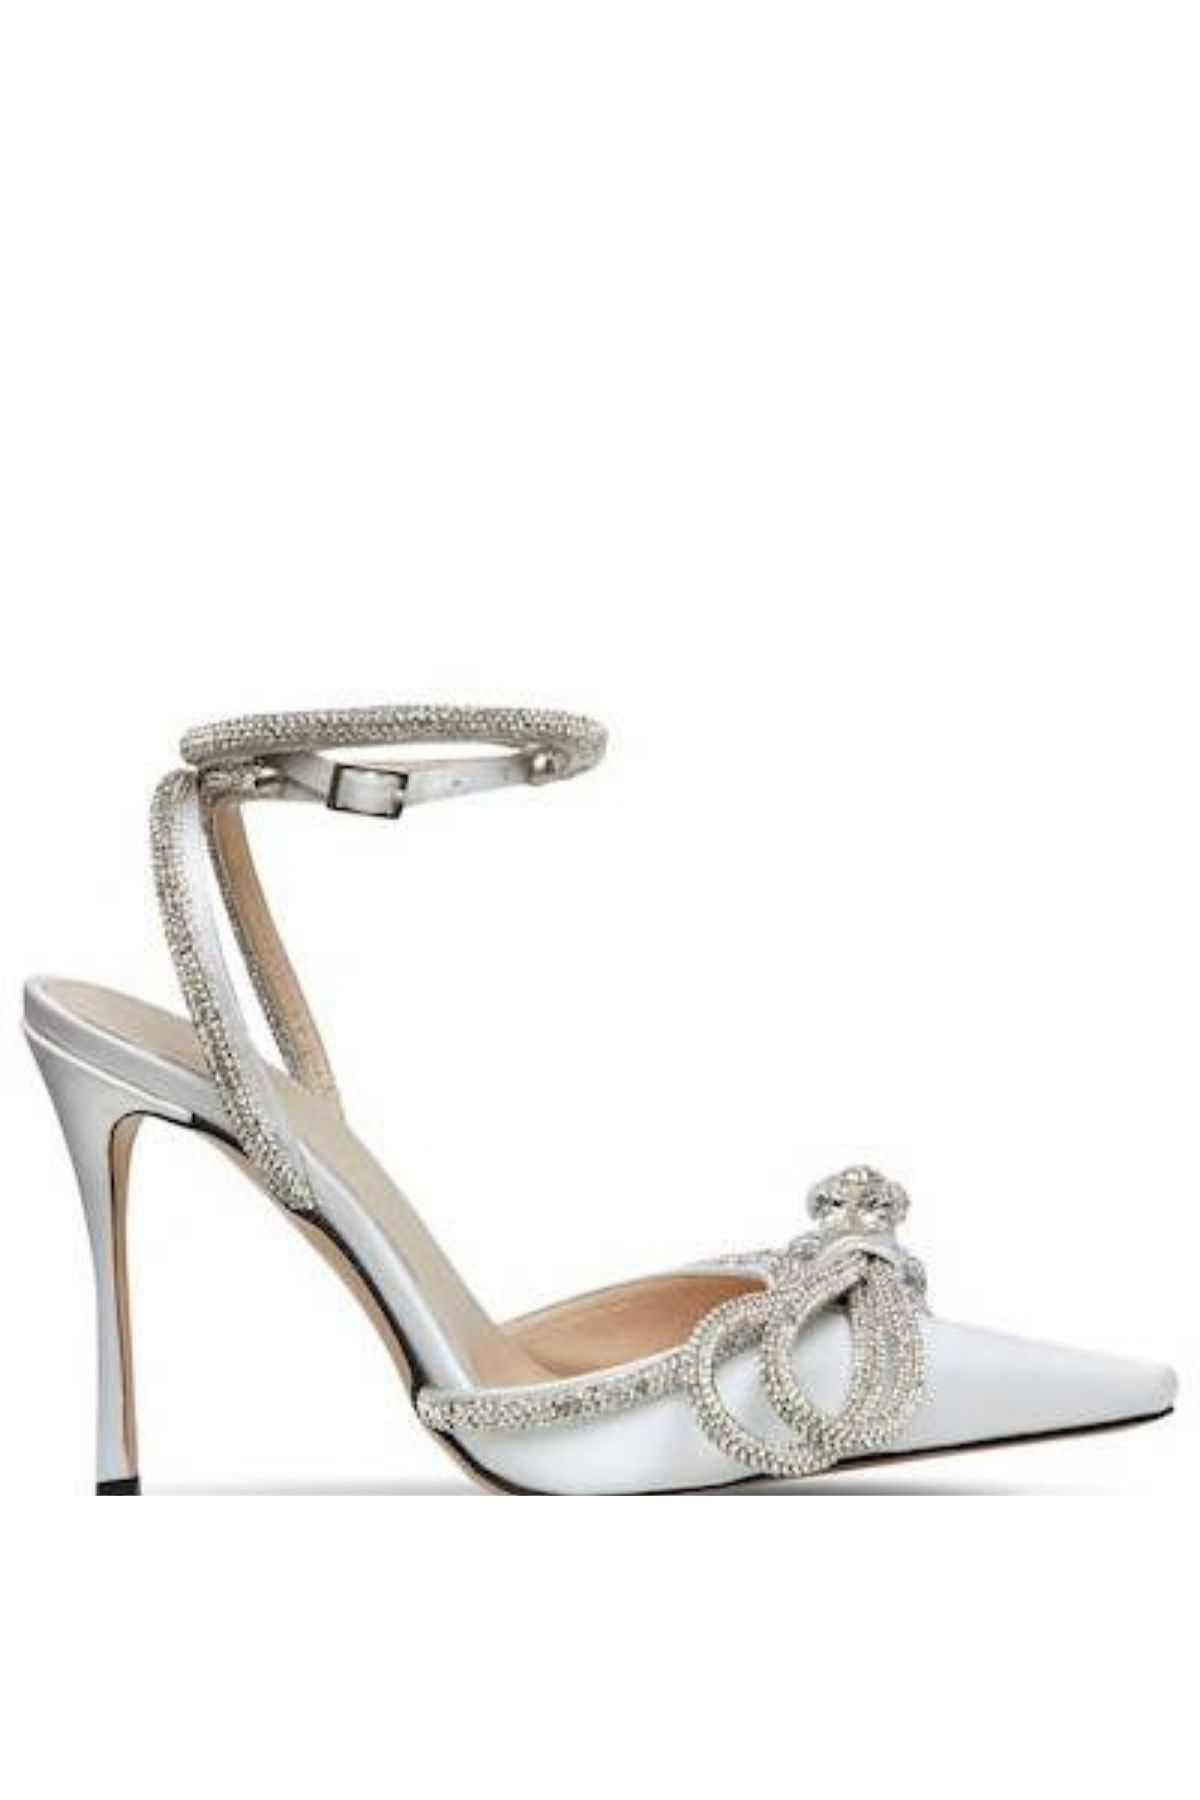 secret style Daphne Beyaz Saten Kristal Taşlı Abiye Topuklu Ayakkabı